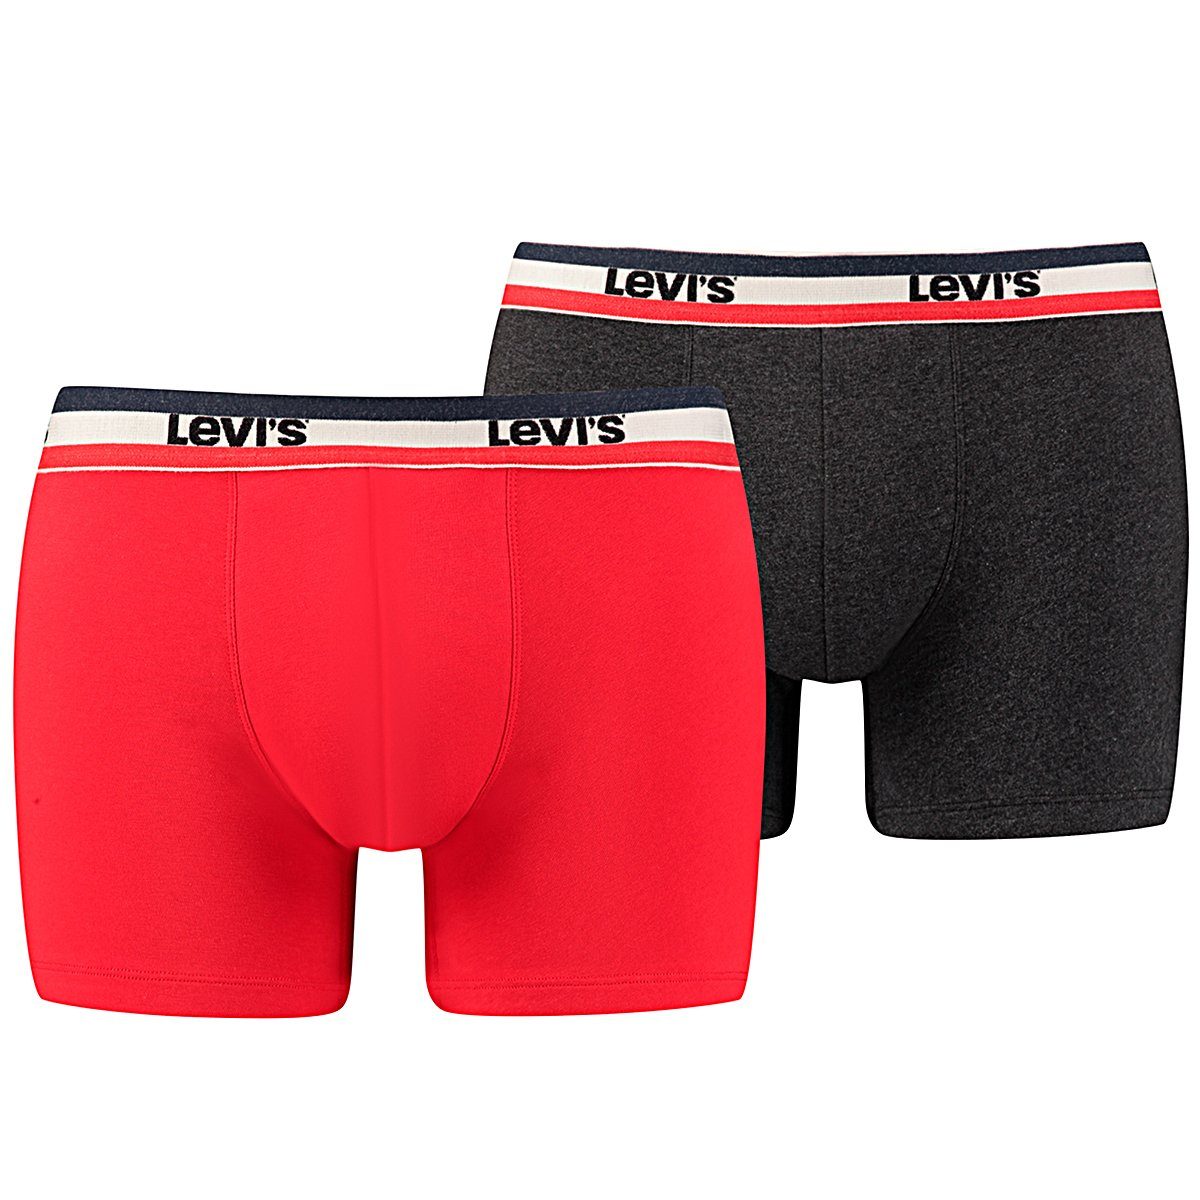 Levi's® / Brief 2P Boxershorts Levis Black Boxer - 786 Red